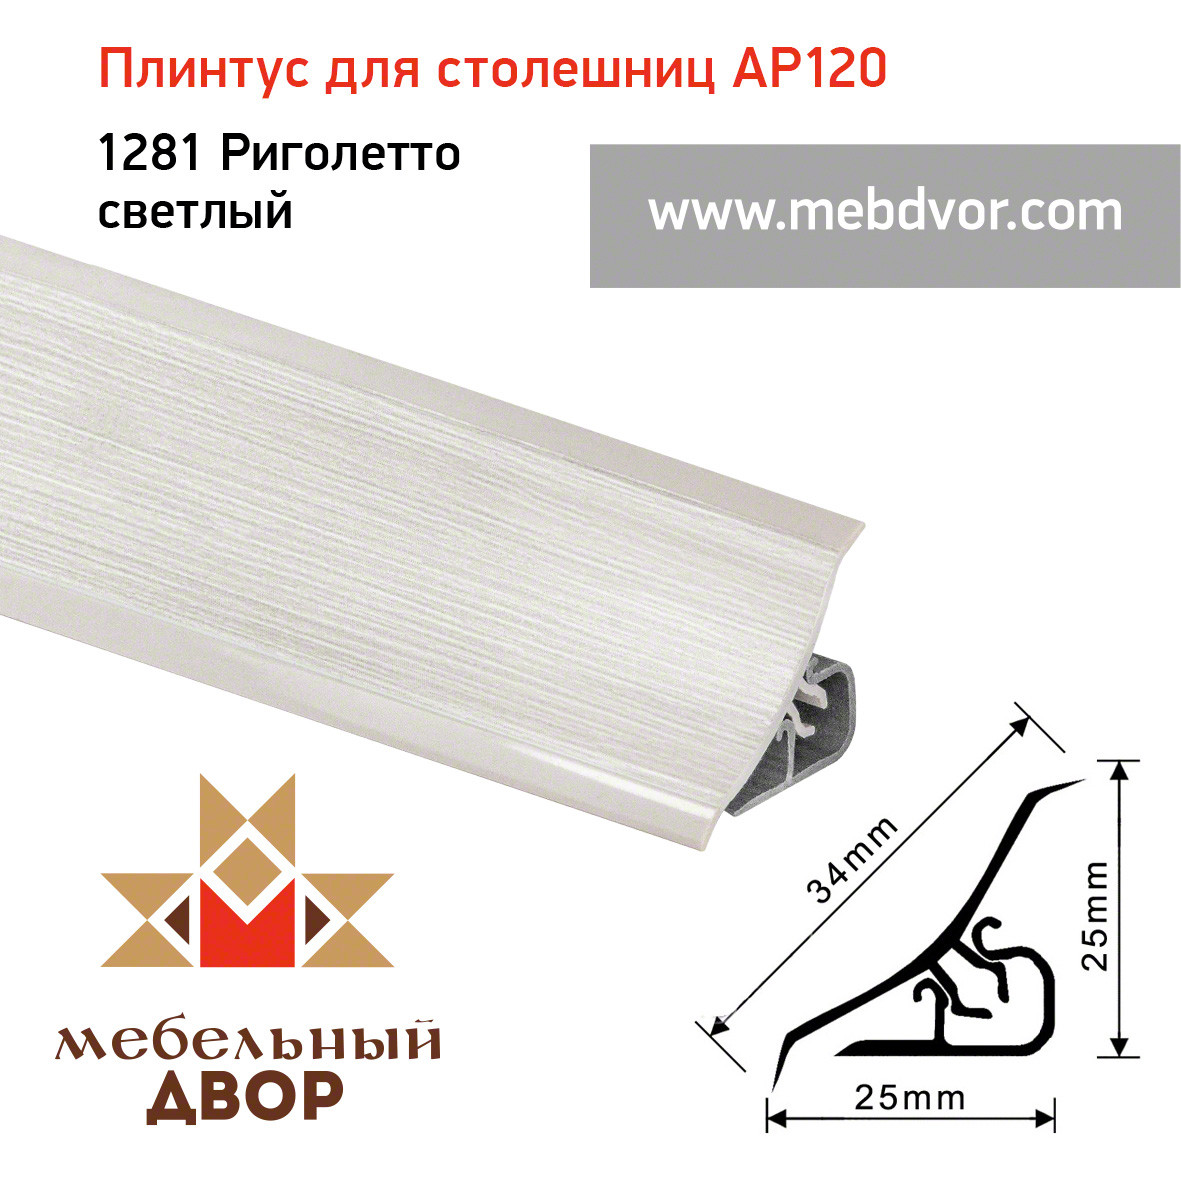 Плинтус для столешниц AP120 (1281_Риголетто светлый), 3000 mm